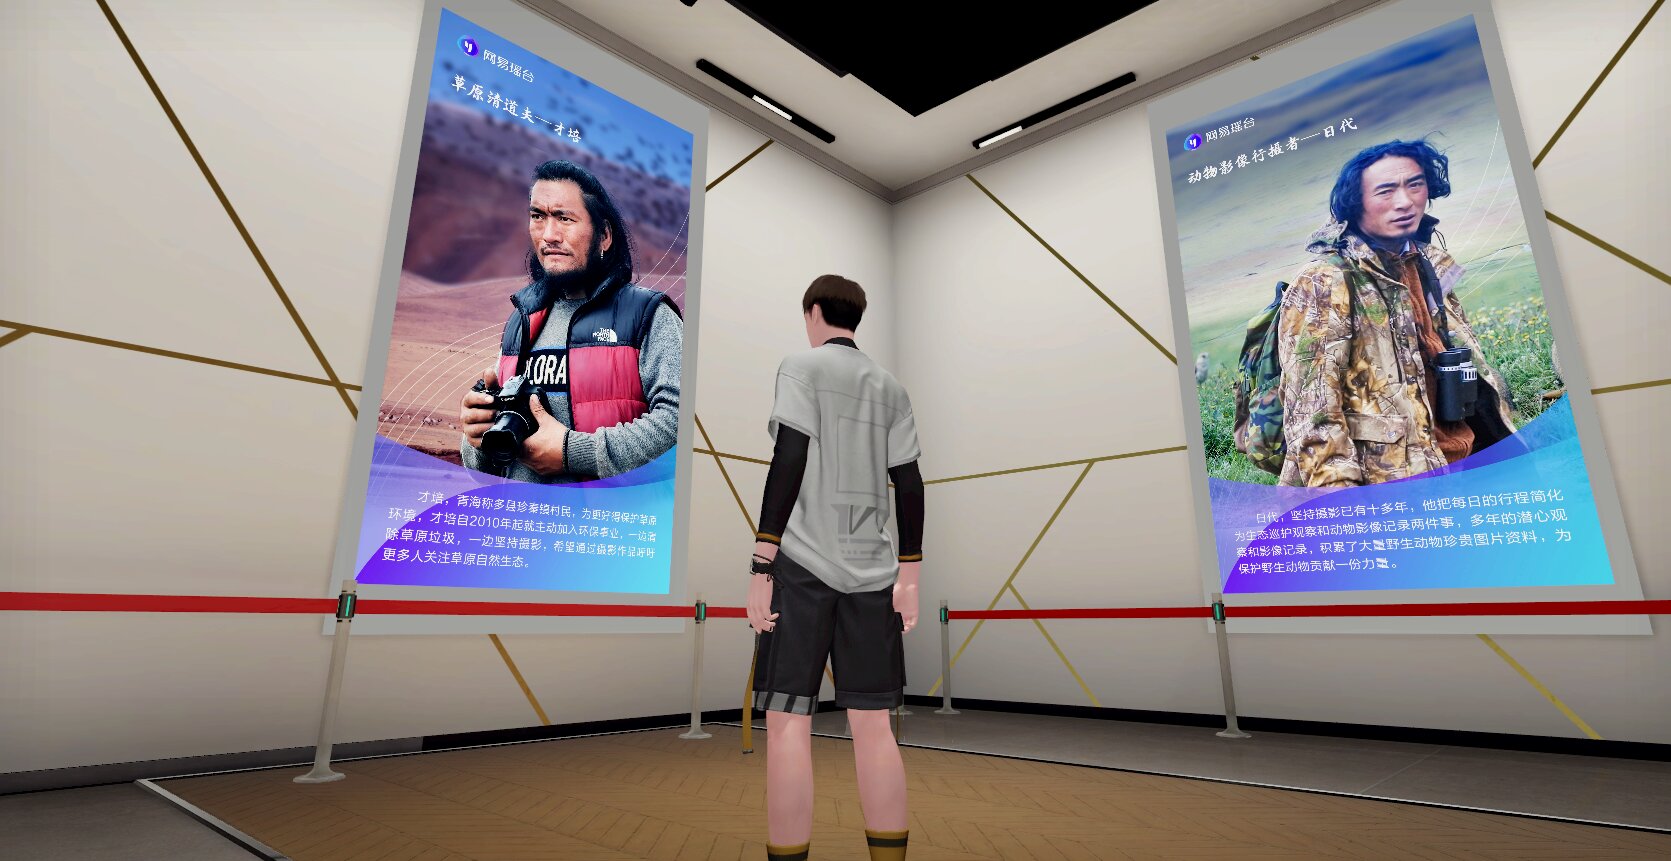 图片展示一位男士站在两个展示板前，板上有人物照片和中文文字描述，环境像是一个展览馆或信息中心。